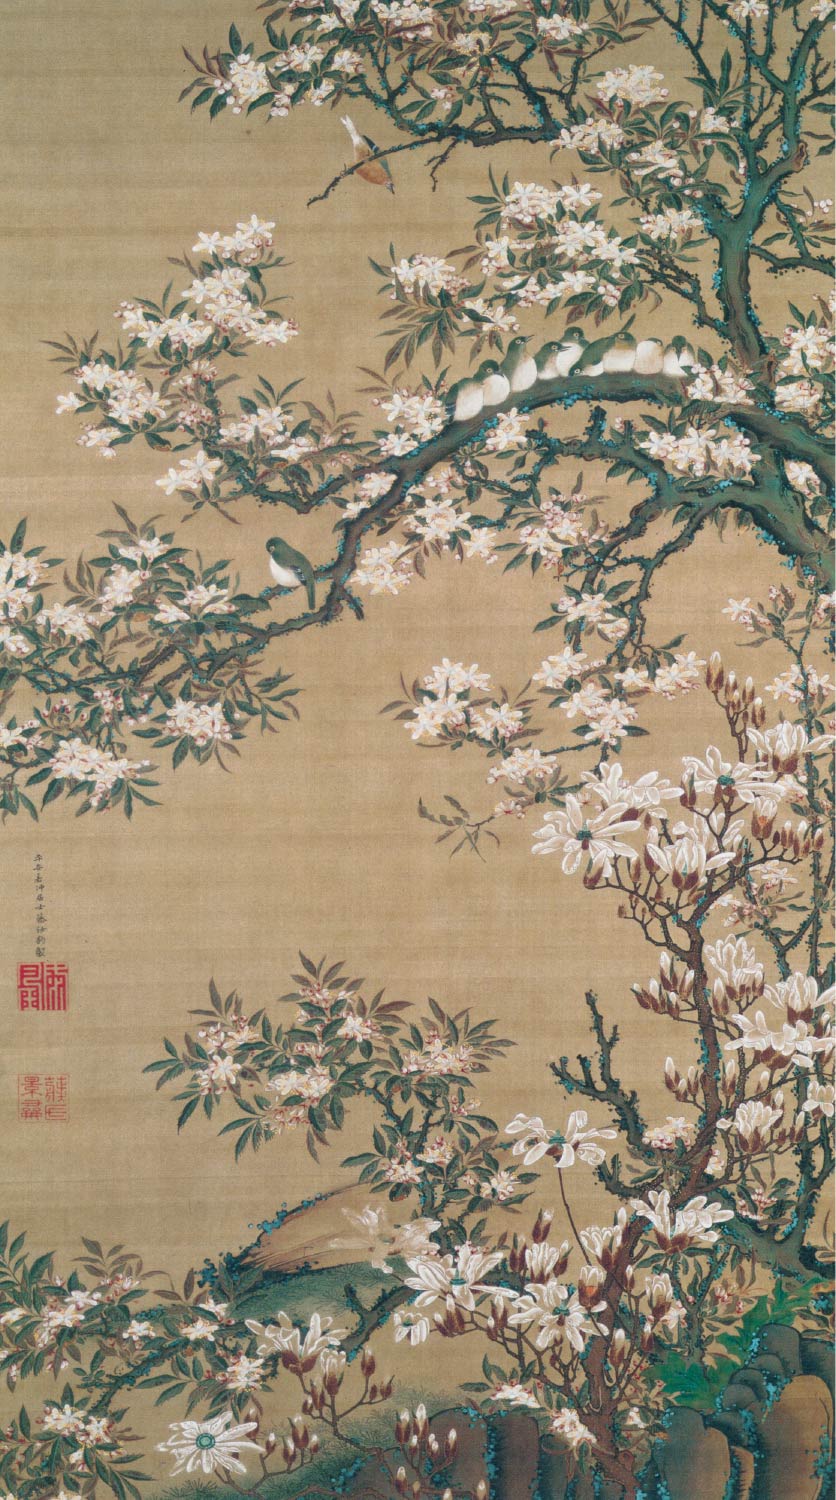 【無料壁紙】伊藤 若冲「海棠目白図図 (18世紀)」 / Ito Jakuchu_Kaido mejiro-zu (Flowering crab apple and White-eyes) (18th century)